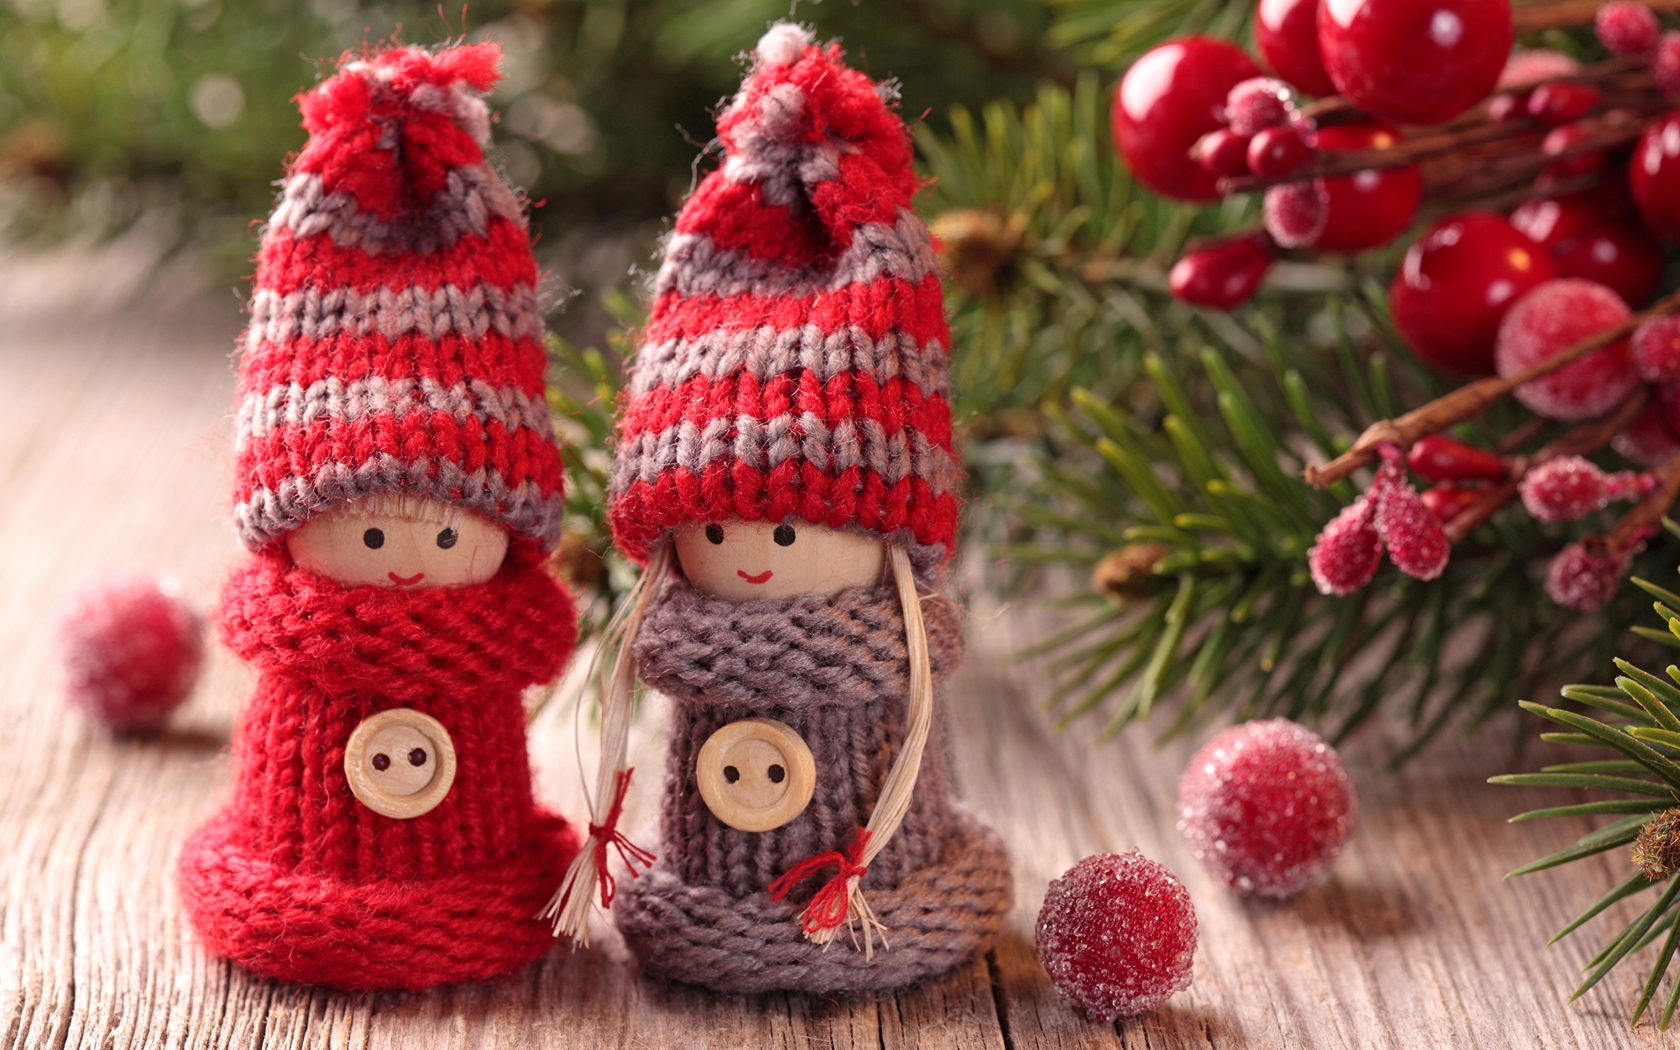 Картинка: Кукла, игрушка, зима, вязаные, шапка, веточка, ель, декор, новый год, рождество